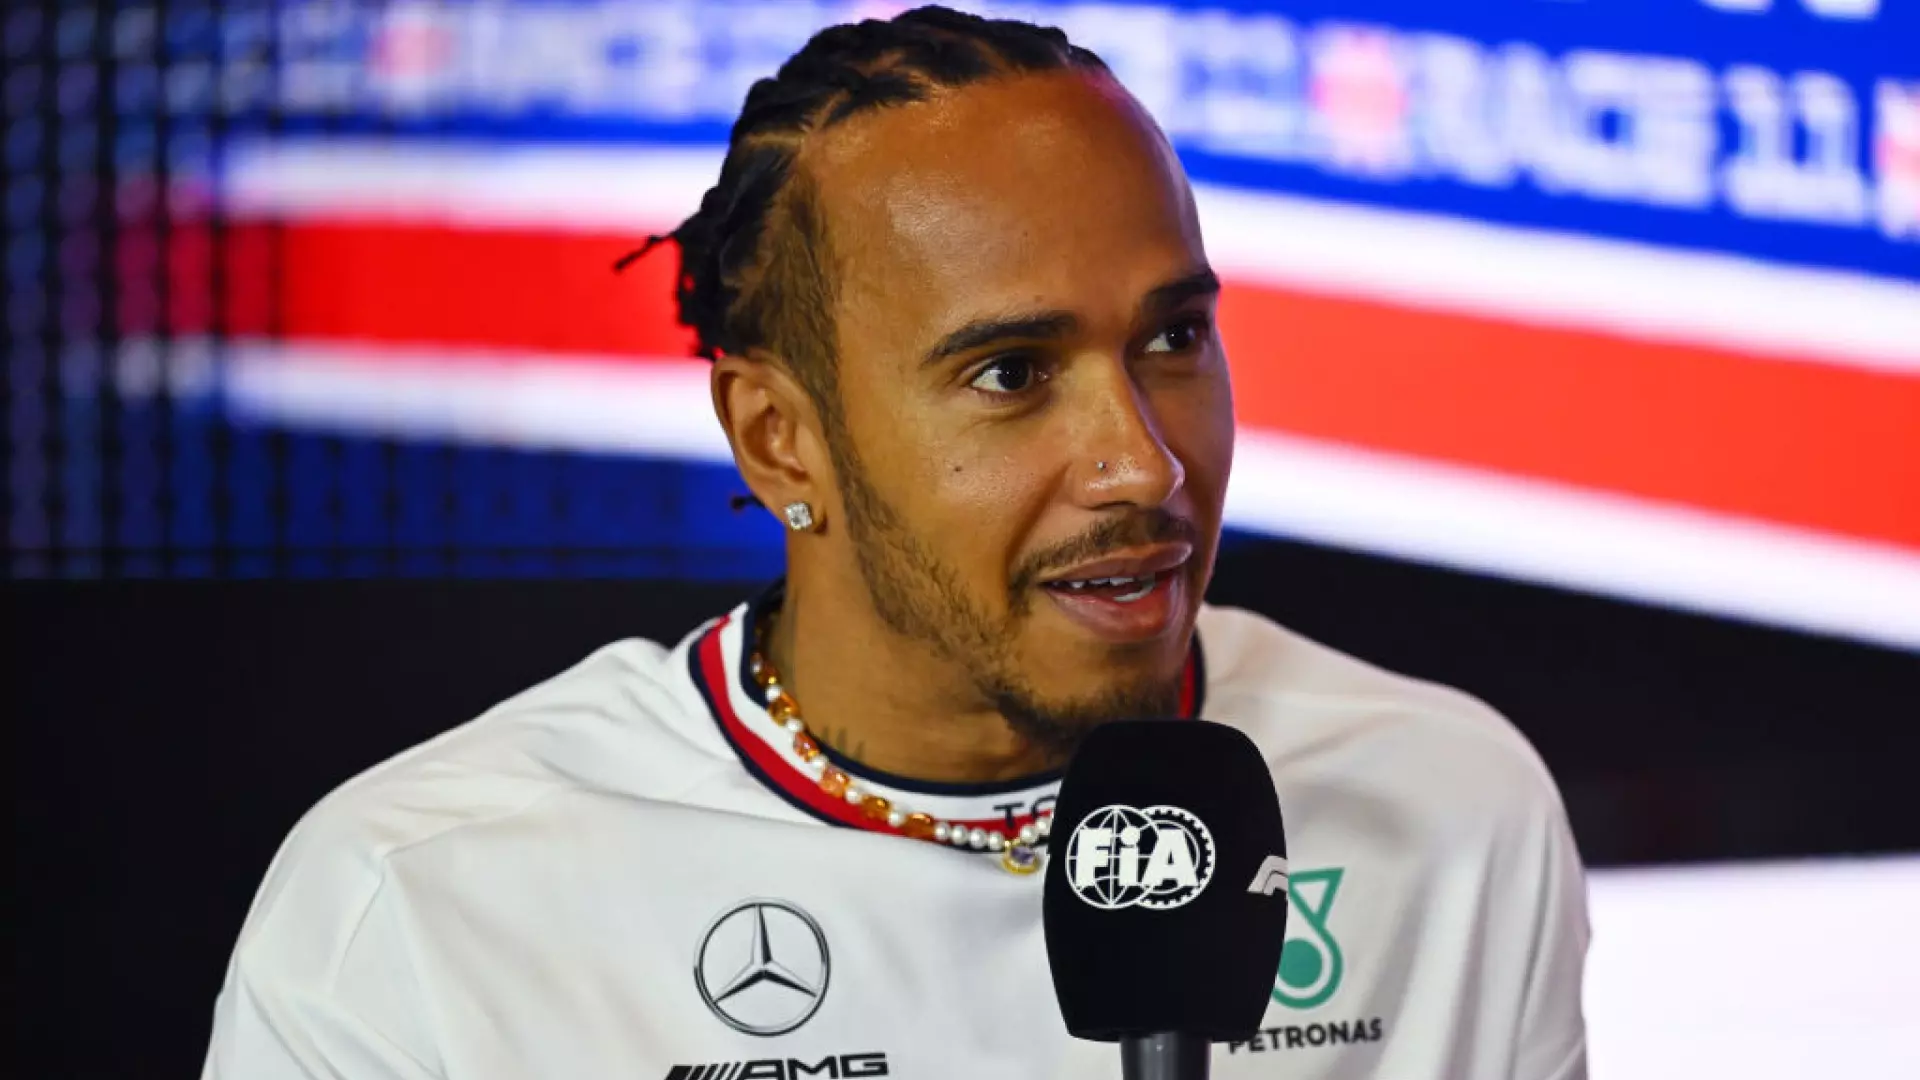 Lewis Hamilton senza giri di parole sul rinnovo di contratto